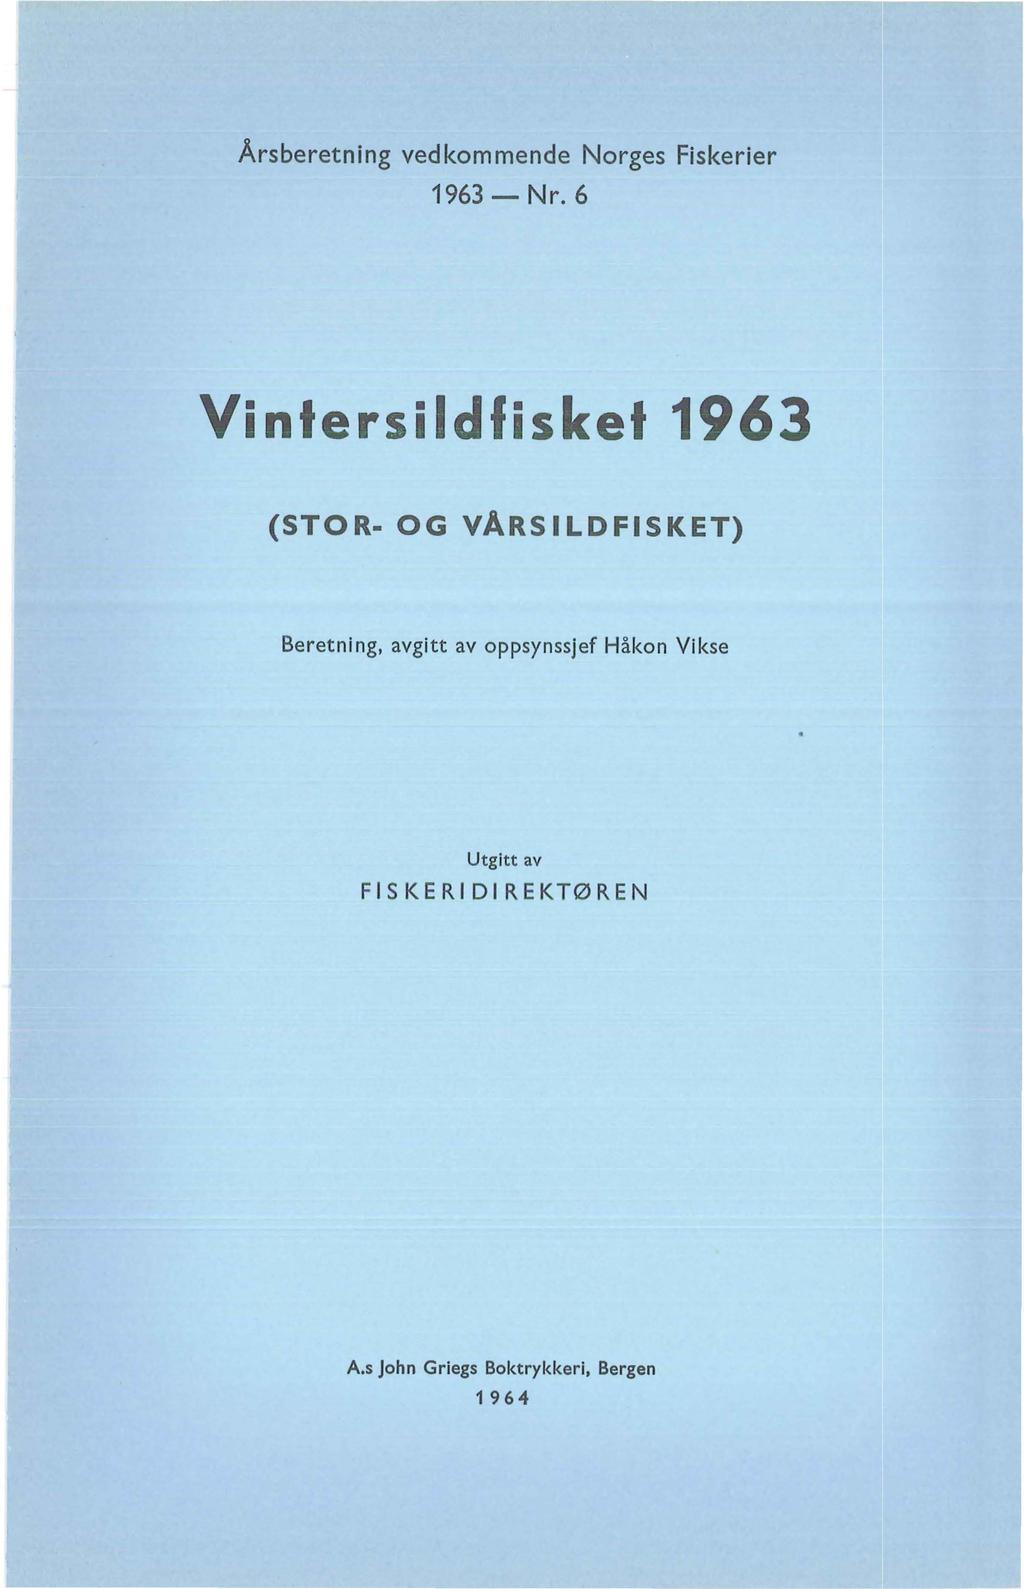 Årsberetning vedkommende Norges Fiskerier 1963- Nr.